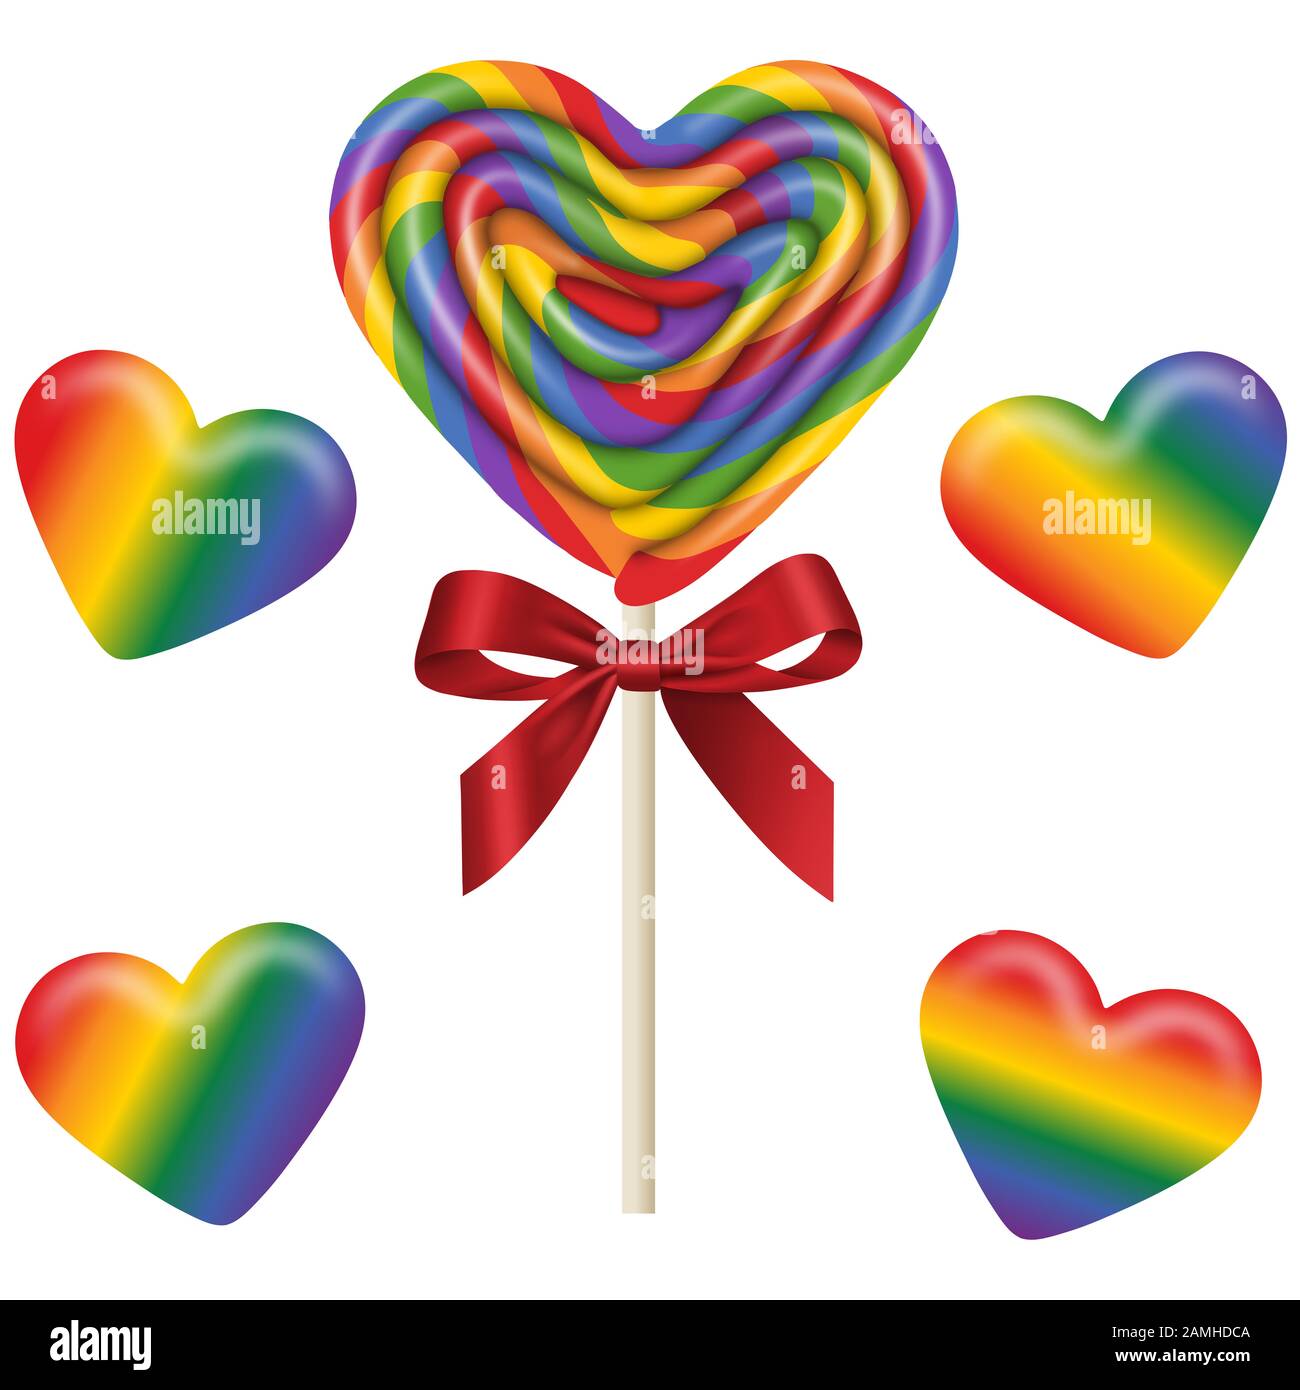 mettez des sucettes et des bonbons gummy isolés en forme de coeur aux couleurs de l'arc-en-ciel Banque D'Images